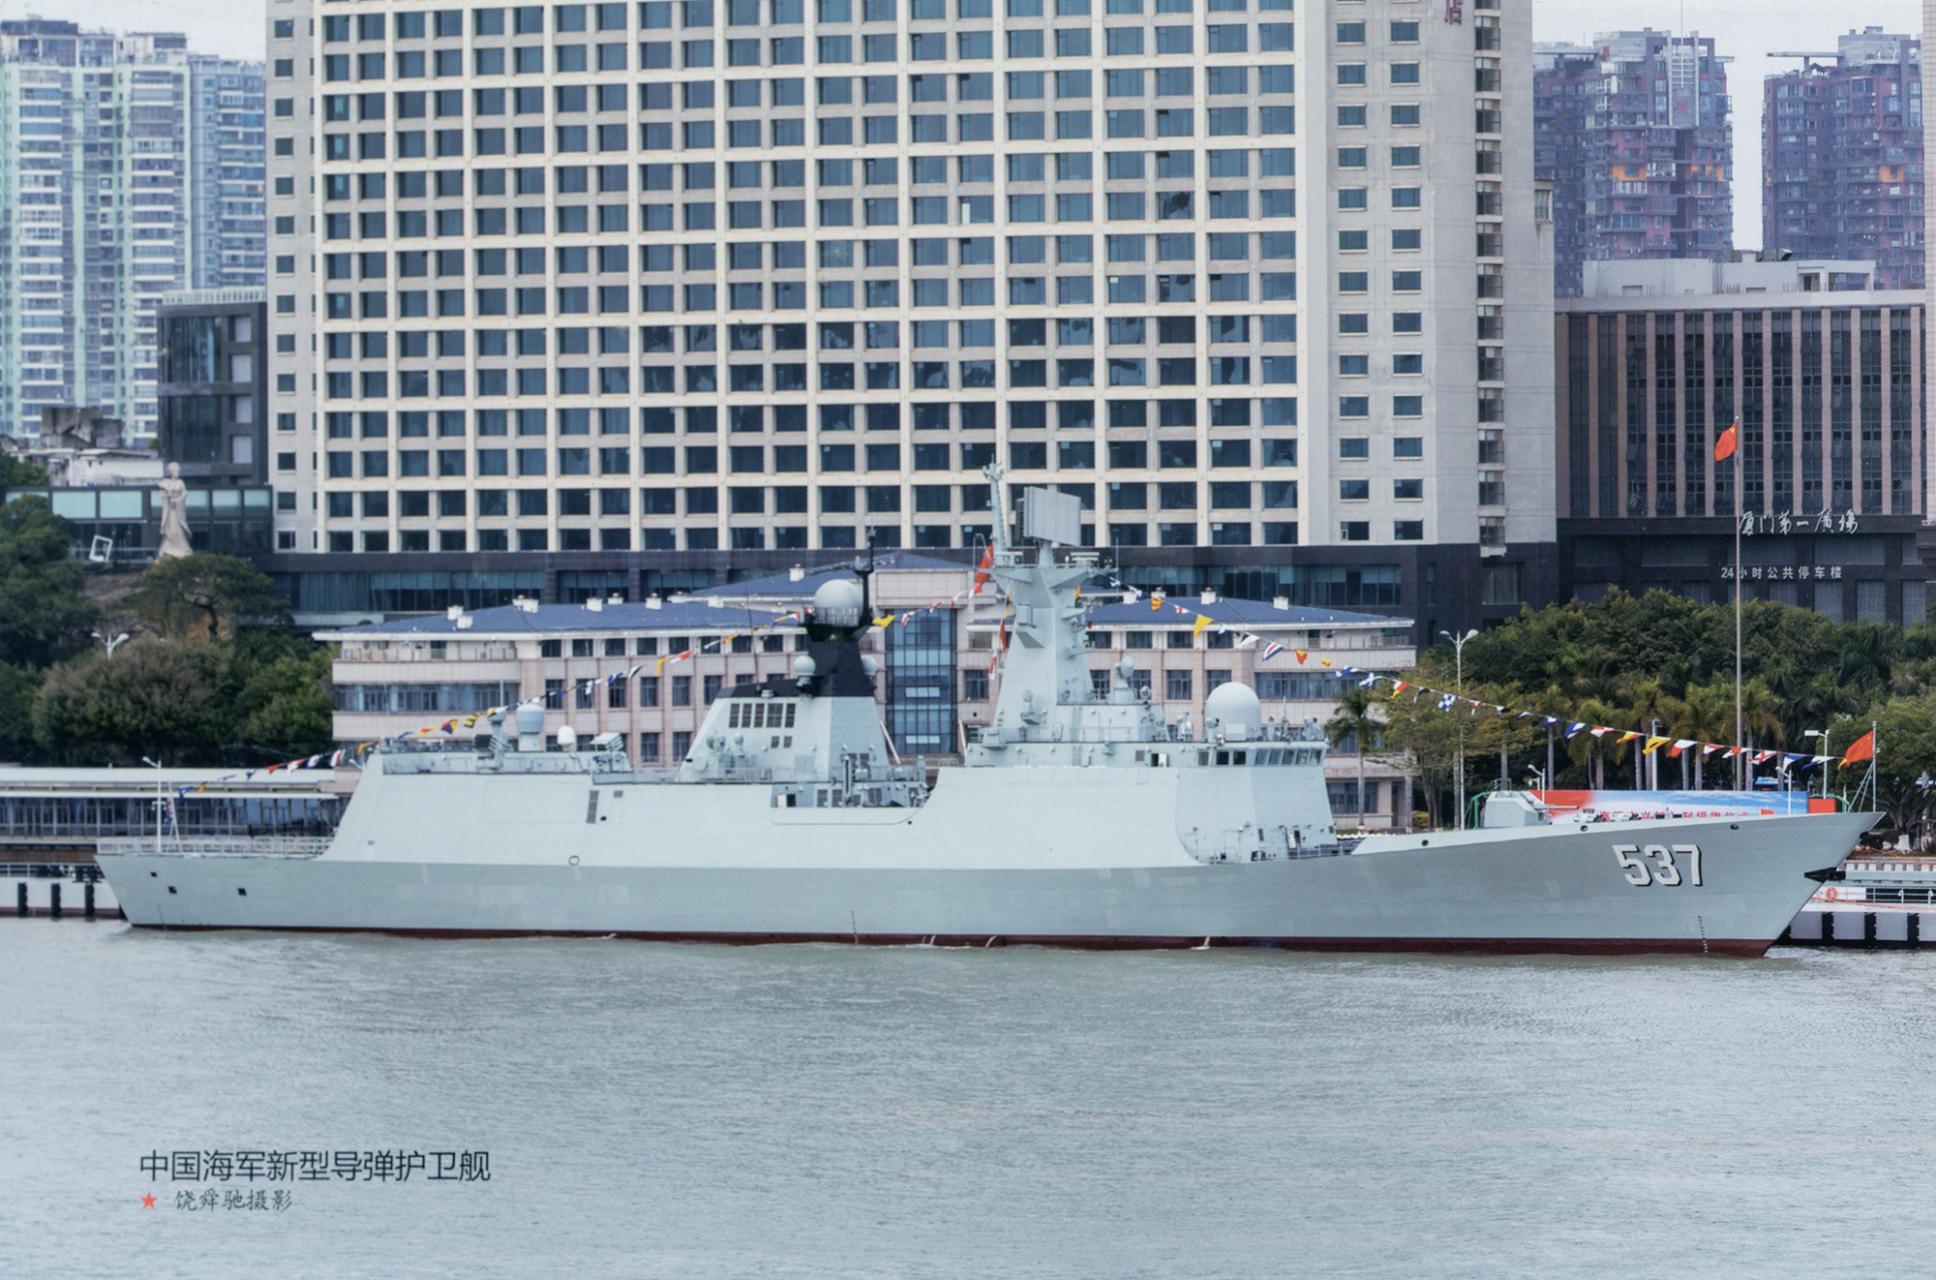 在厦门市中心和平码头的537宜兴舰,这是最新服役的054ag型导弹护卫舰